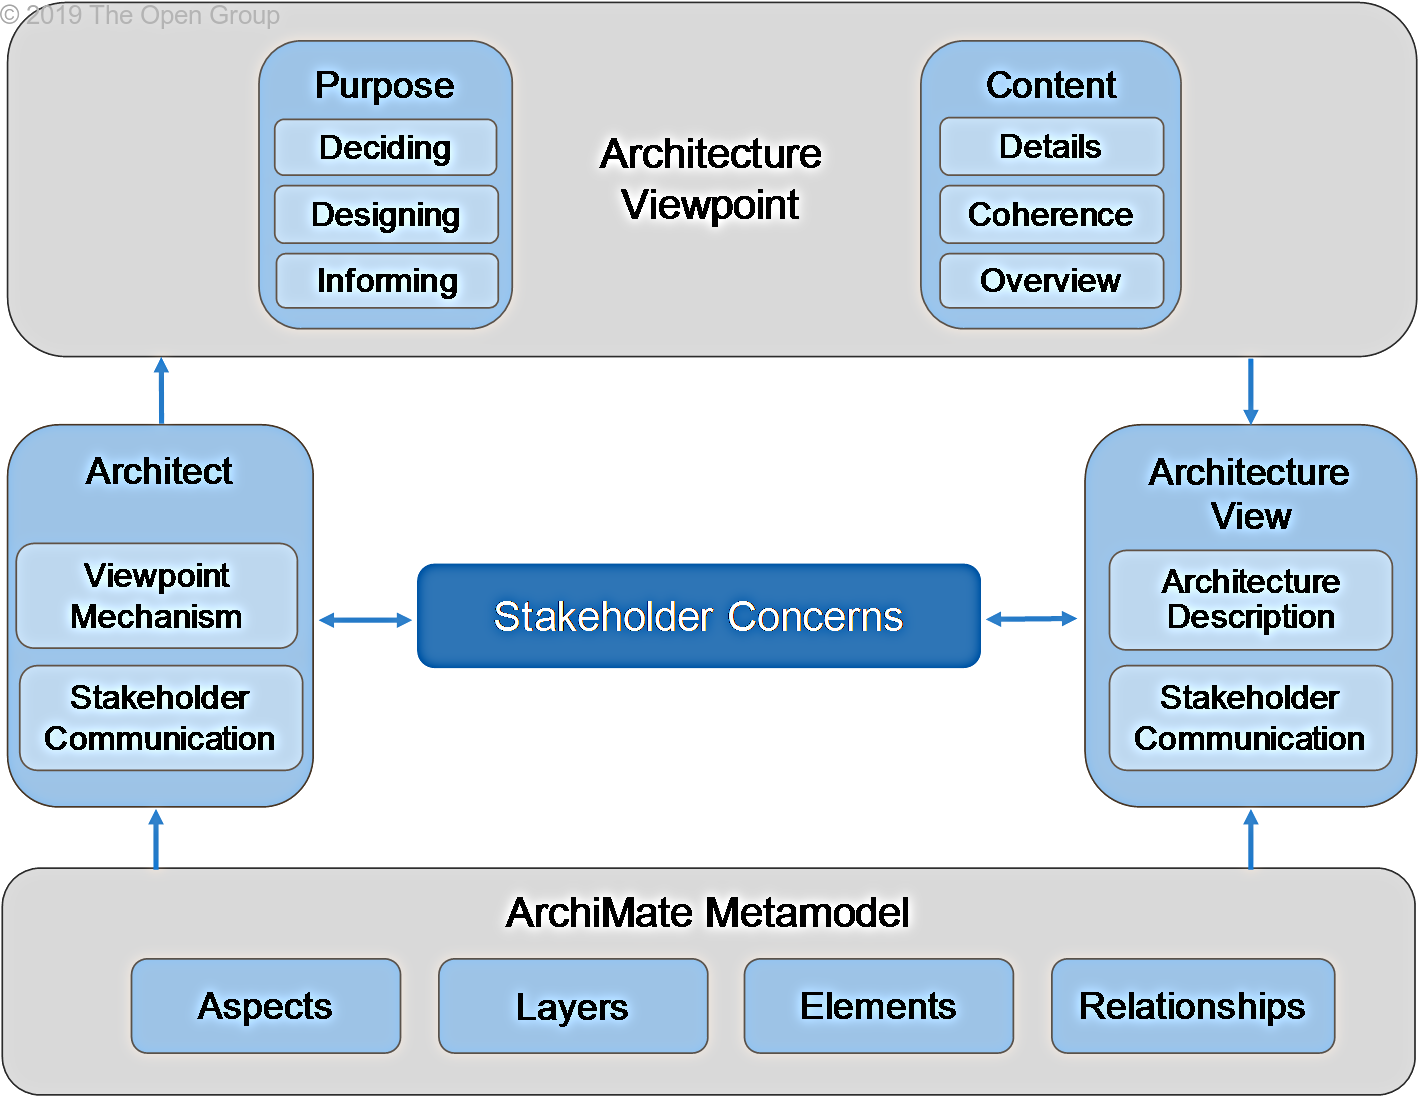 그림 2 Framing Stakeholder Concerns using the Viewpoint Mechanism  <br />    출처: https://pubs.opengroup.org/architecture/archimate3-doc/chap14.html 